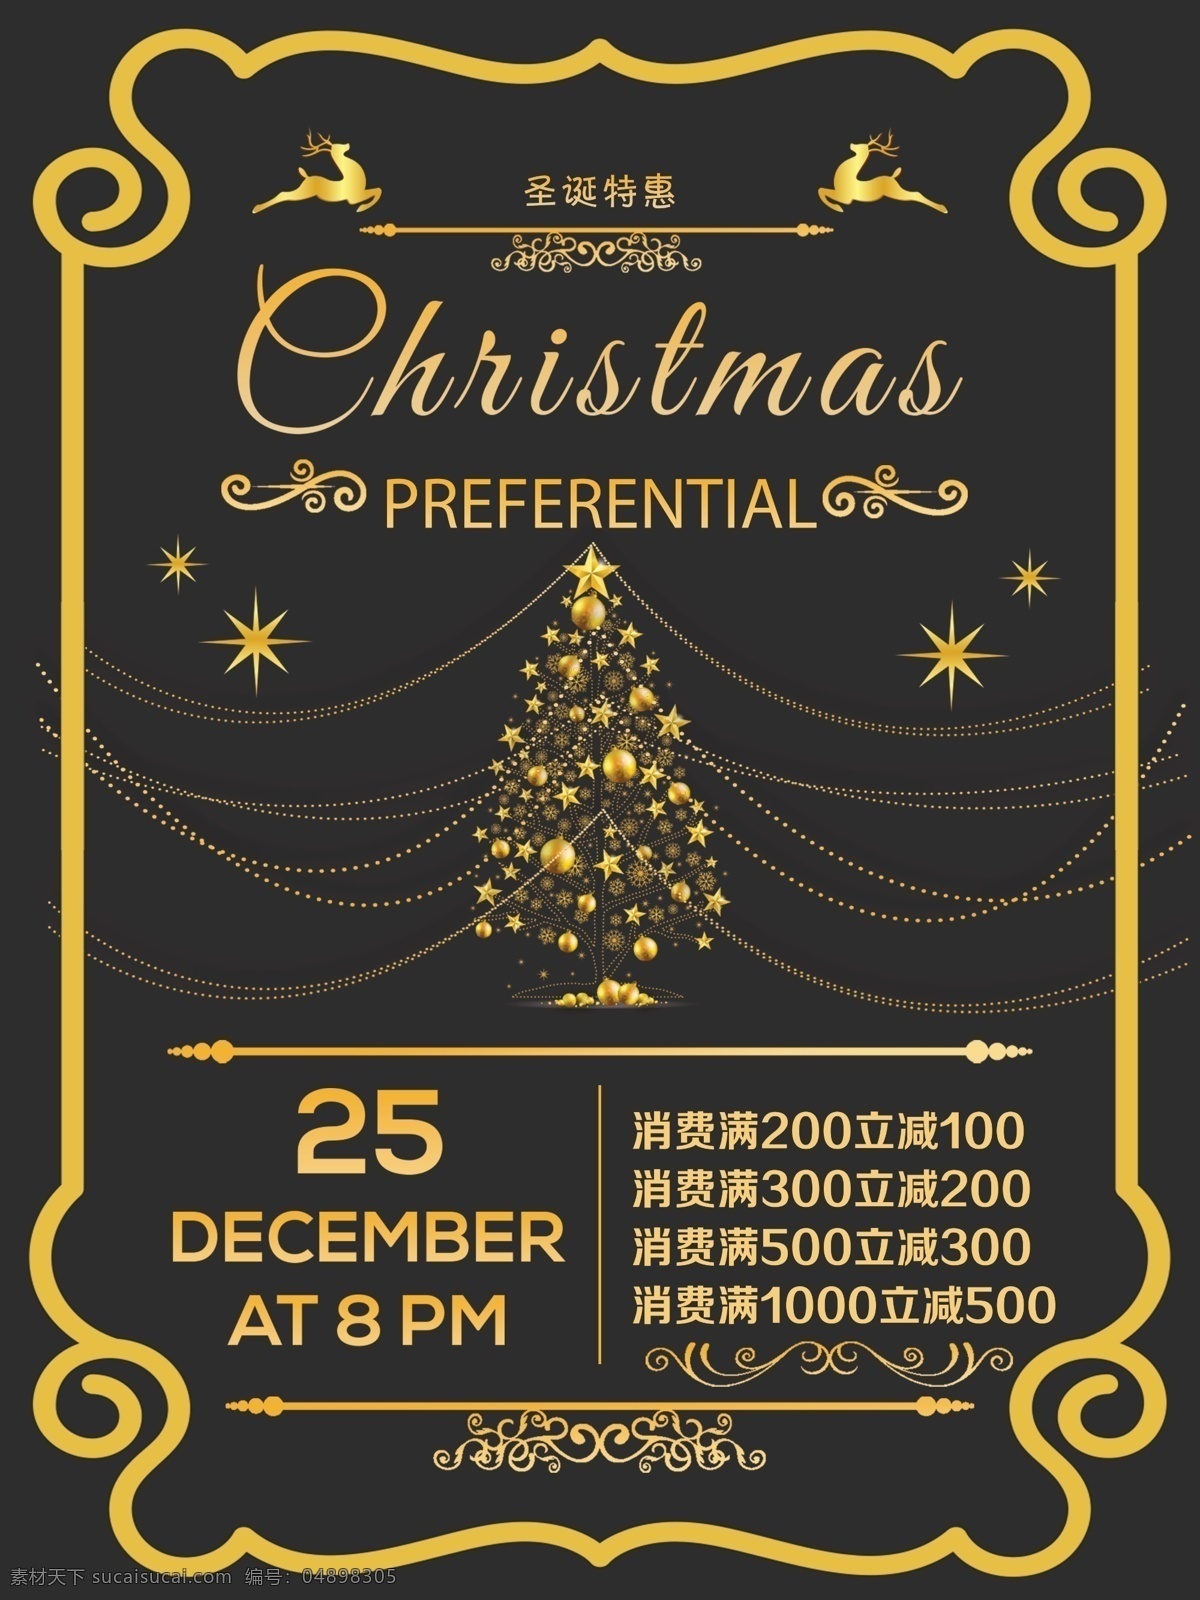 圣诞节 特惠 金色 海报 圣诞树 金色圣诞树 金色字体 金色边框